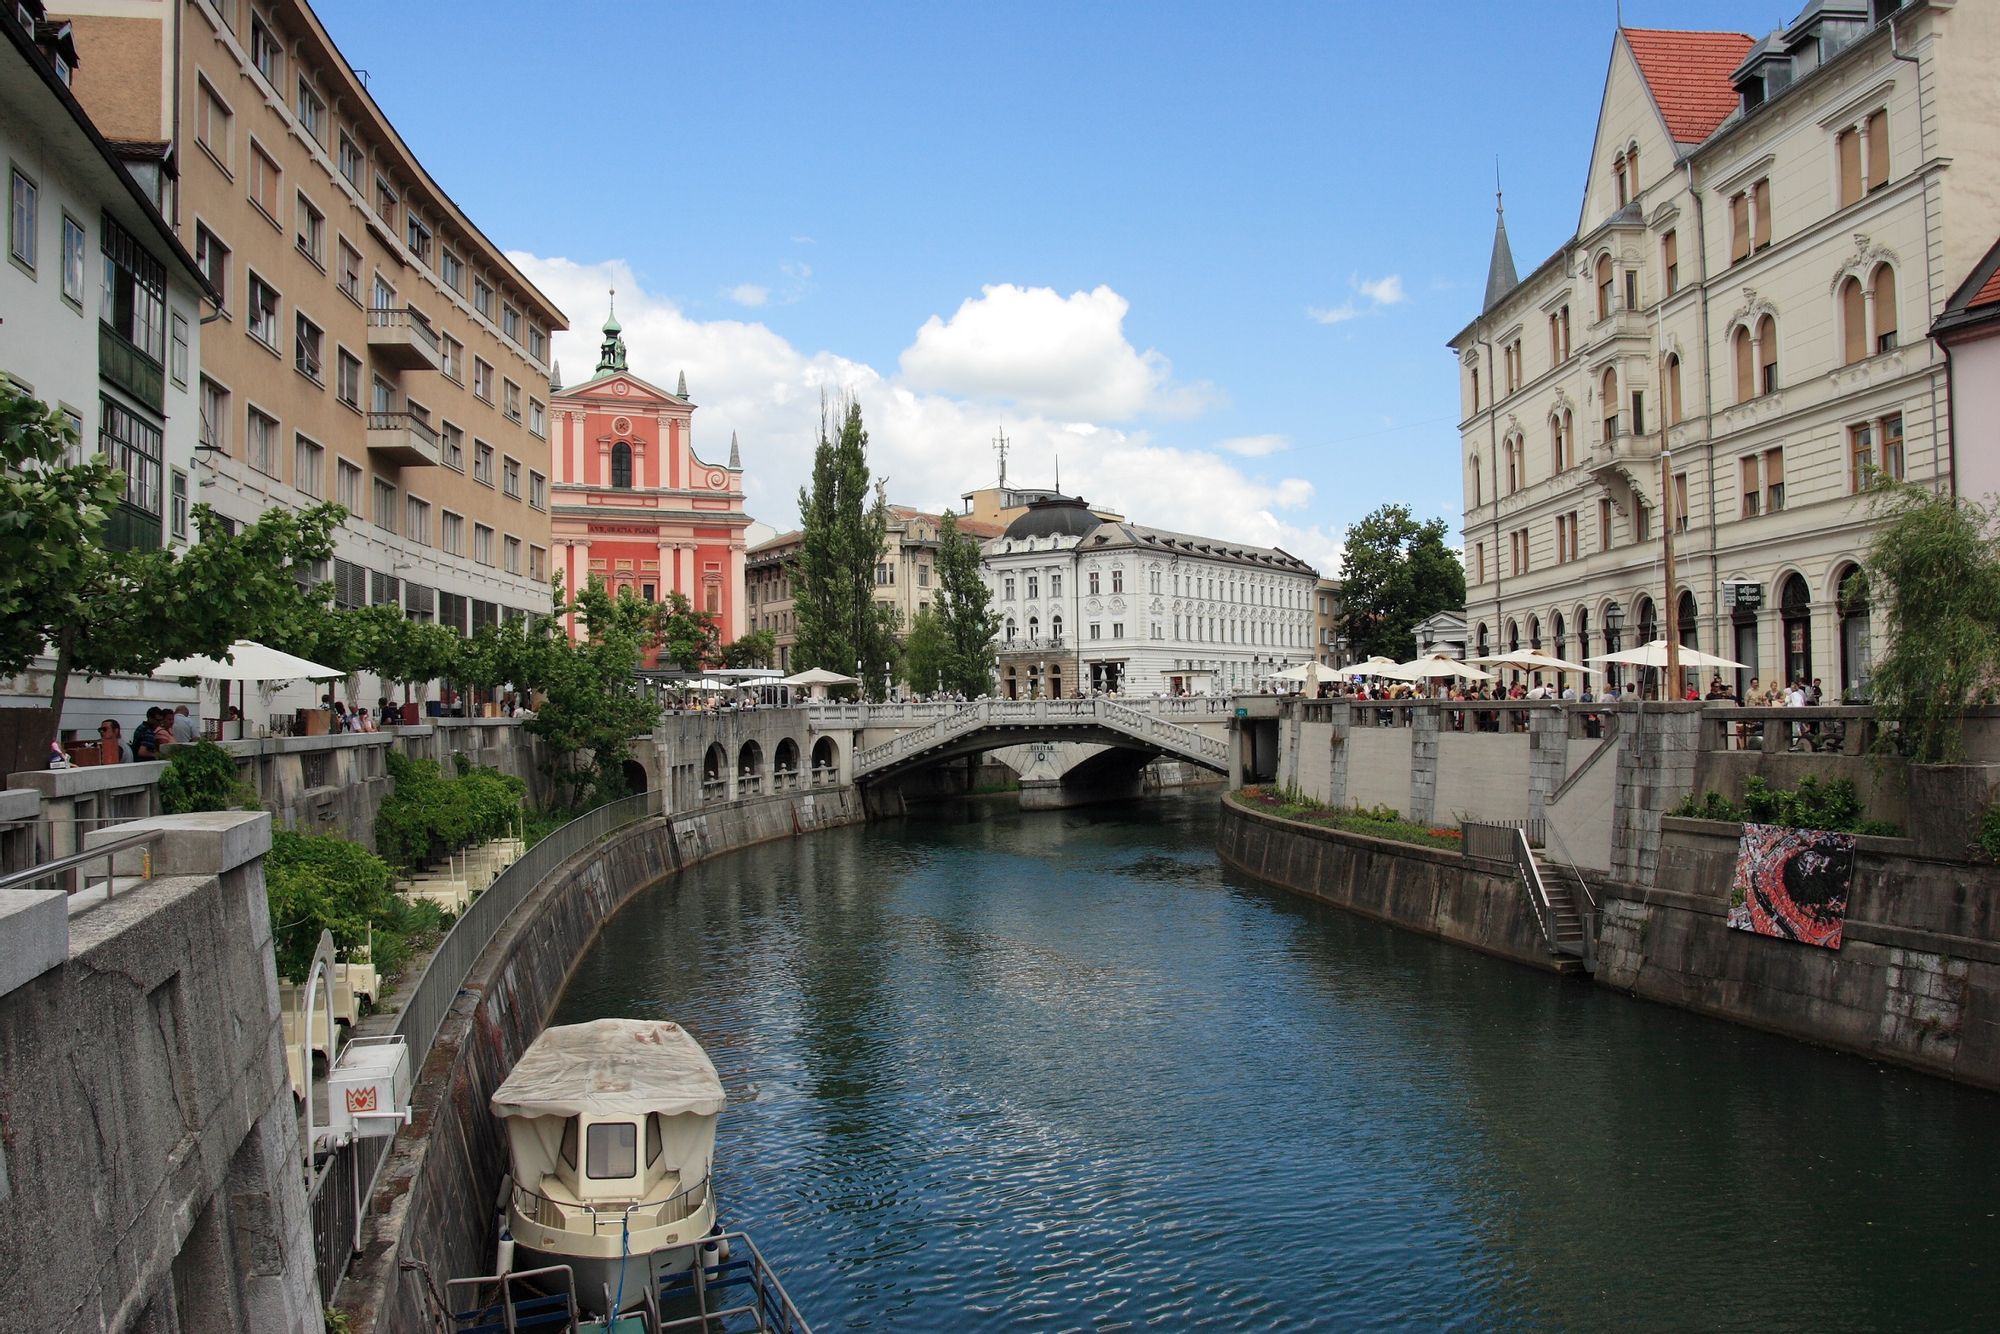 The Ljubljanica river runs through the scenic city centre of Slovenia's capital Ljubljana.